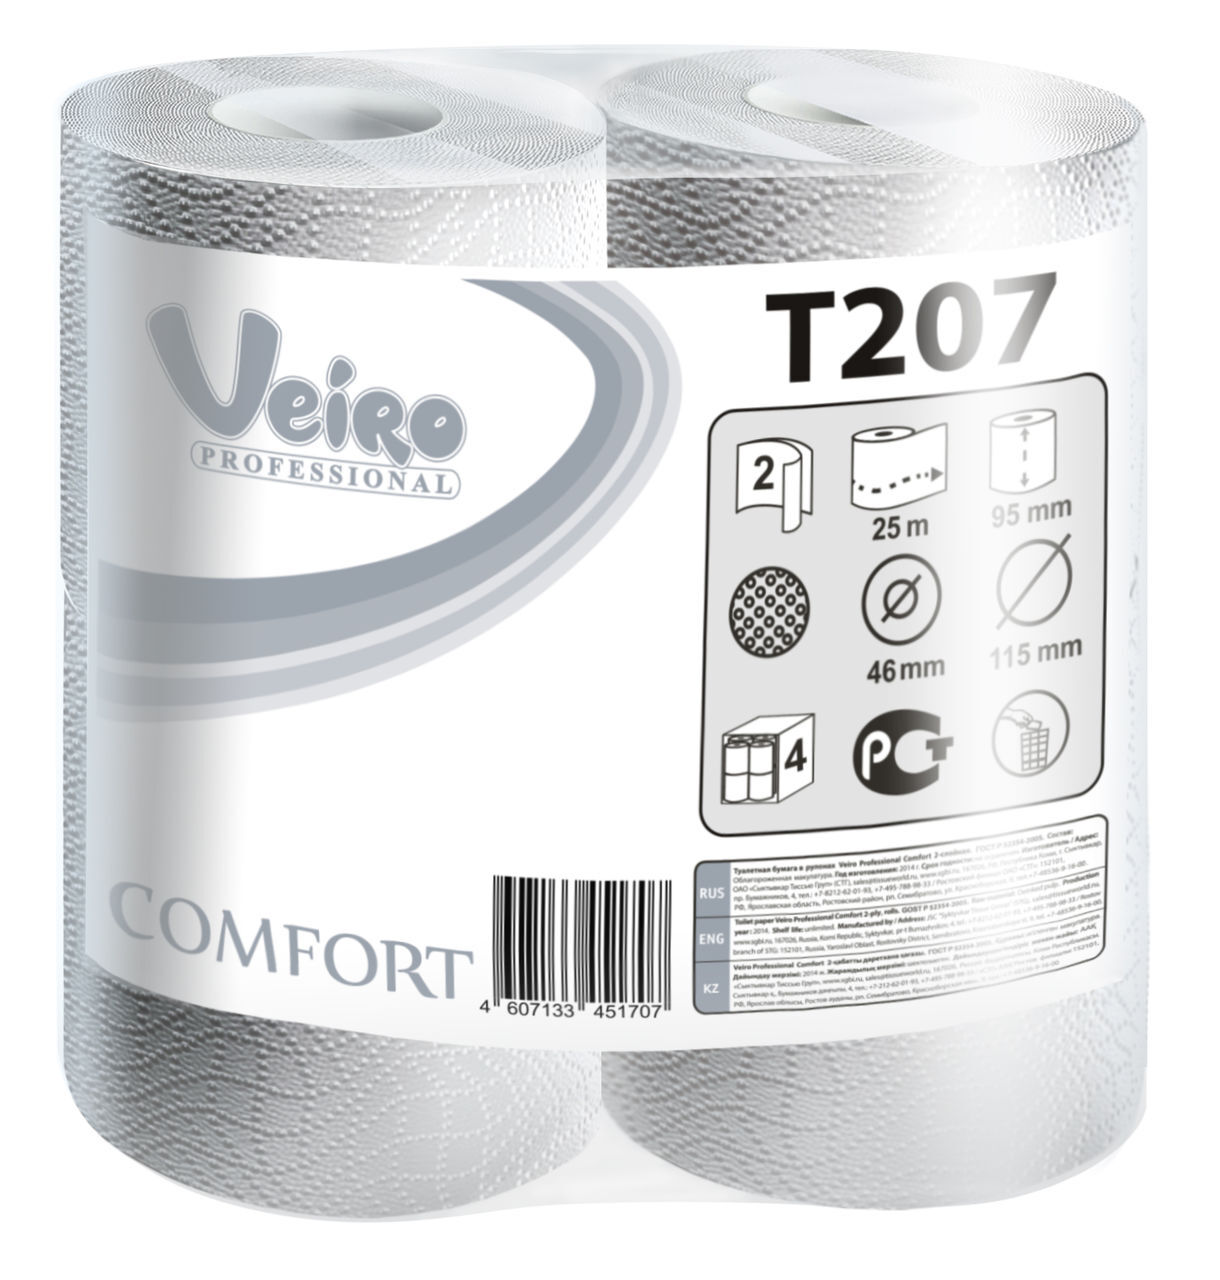 Veiro Professional Comfort T207 Туалетная бумага двухслойная 46x115 мм